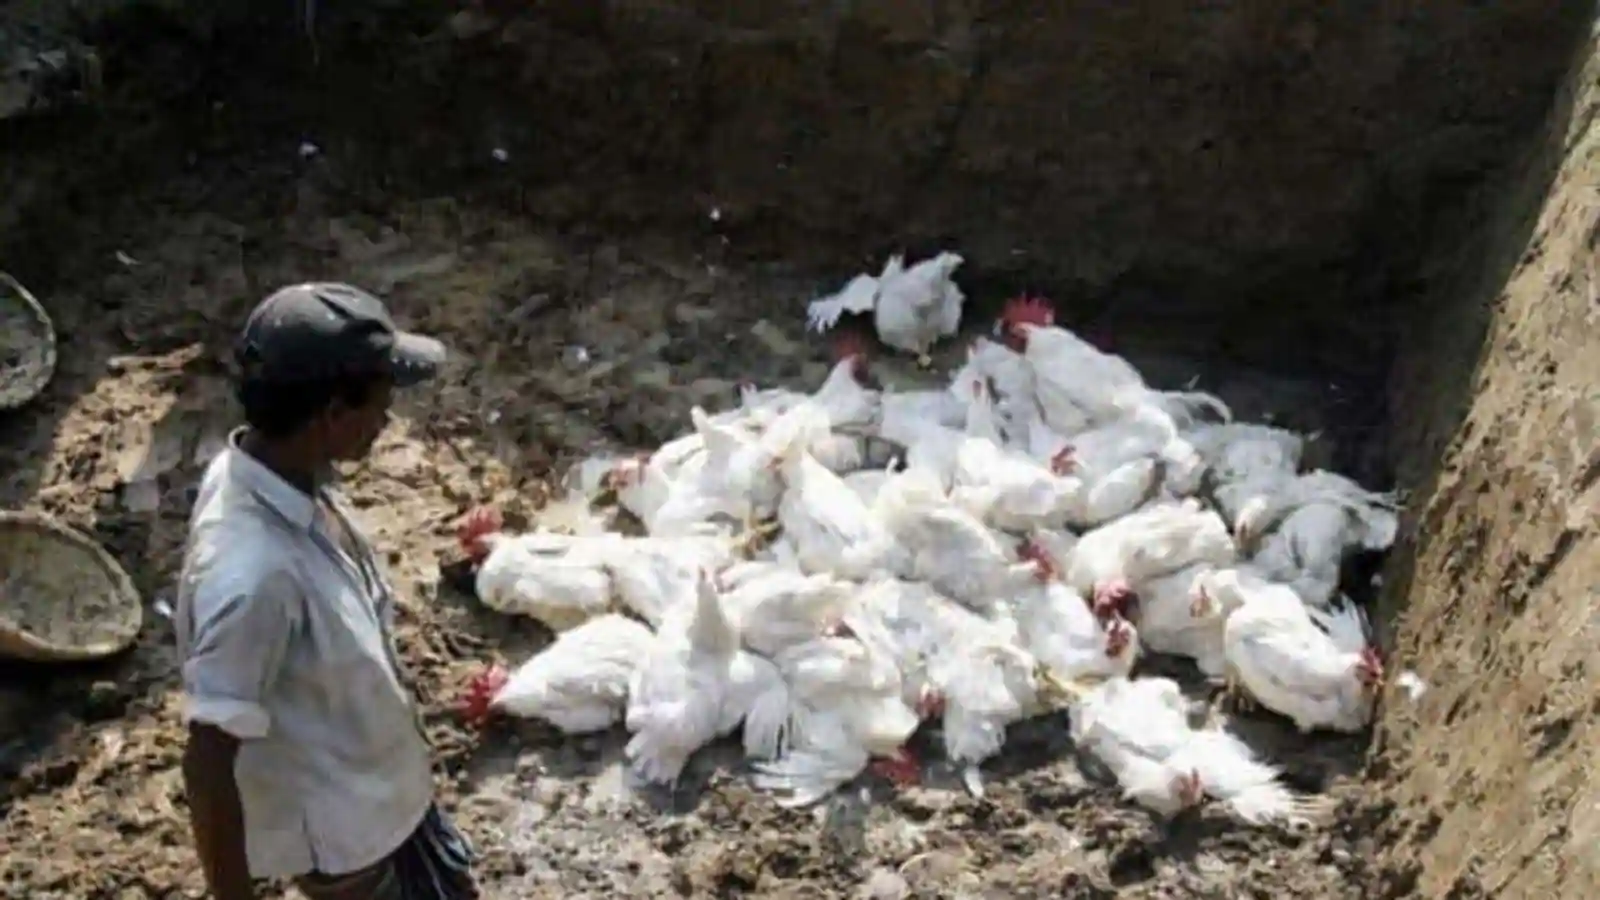 Bird flu detected again in Kathmandu